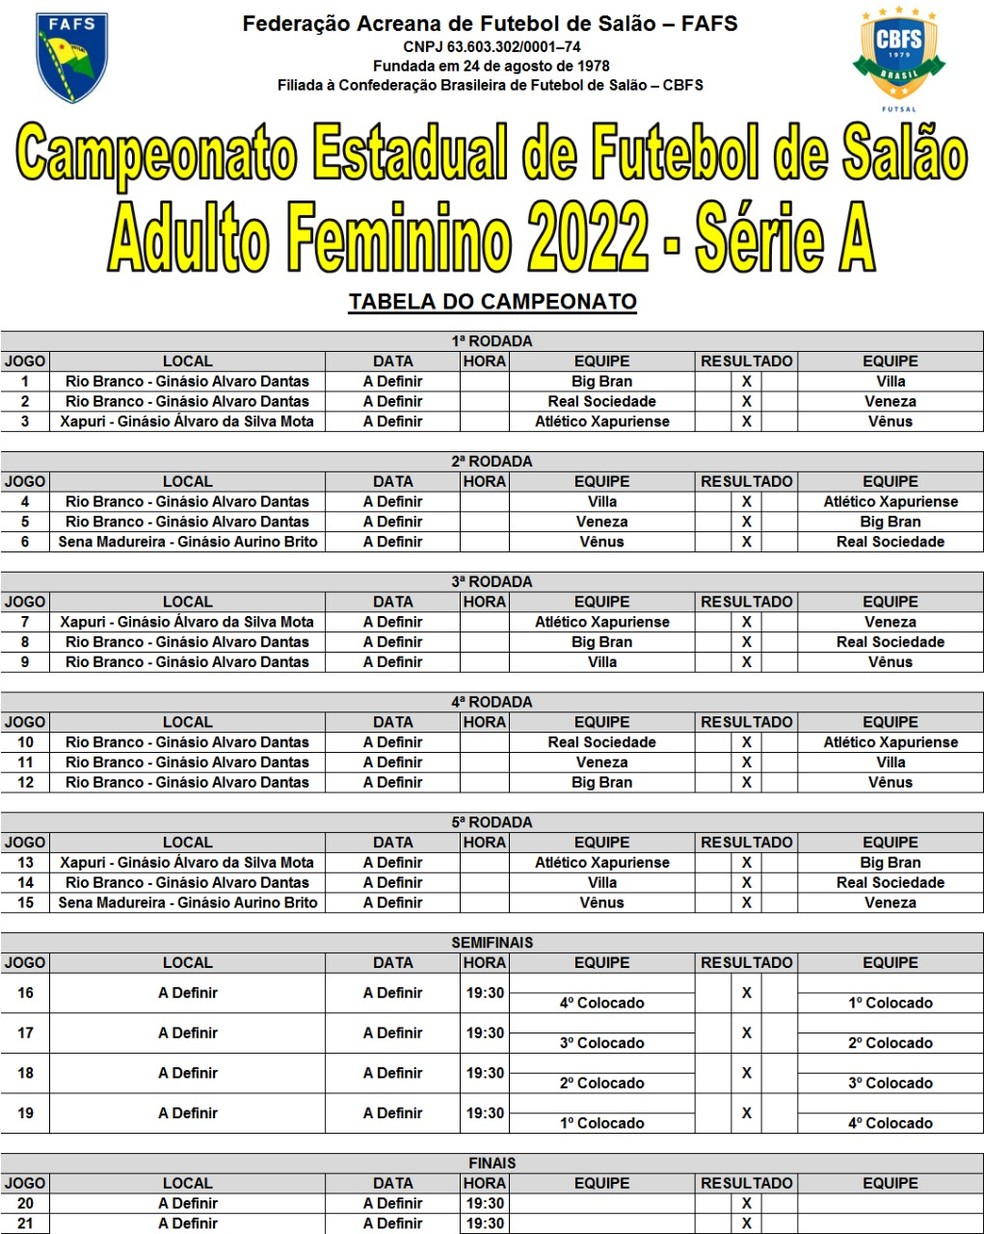 1º Campeonato Feminino de futebol de Salão, Confira os resultados